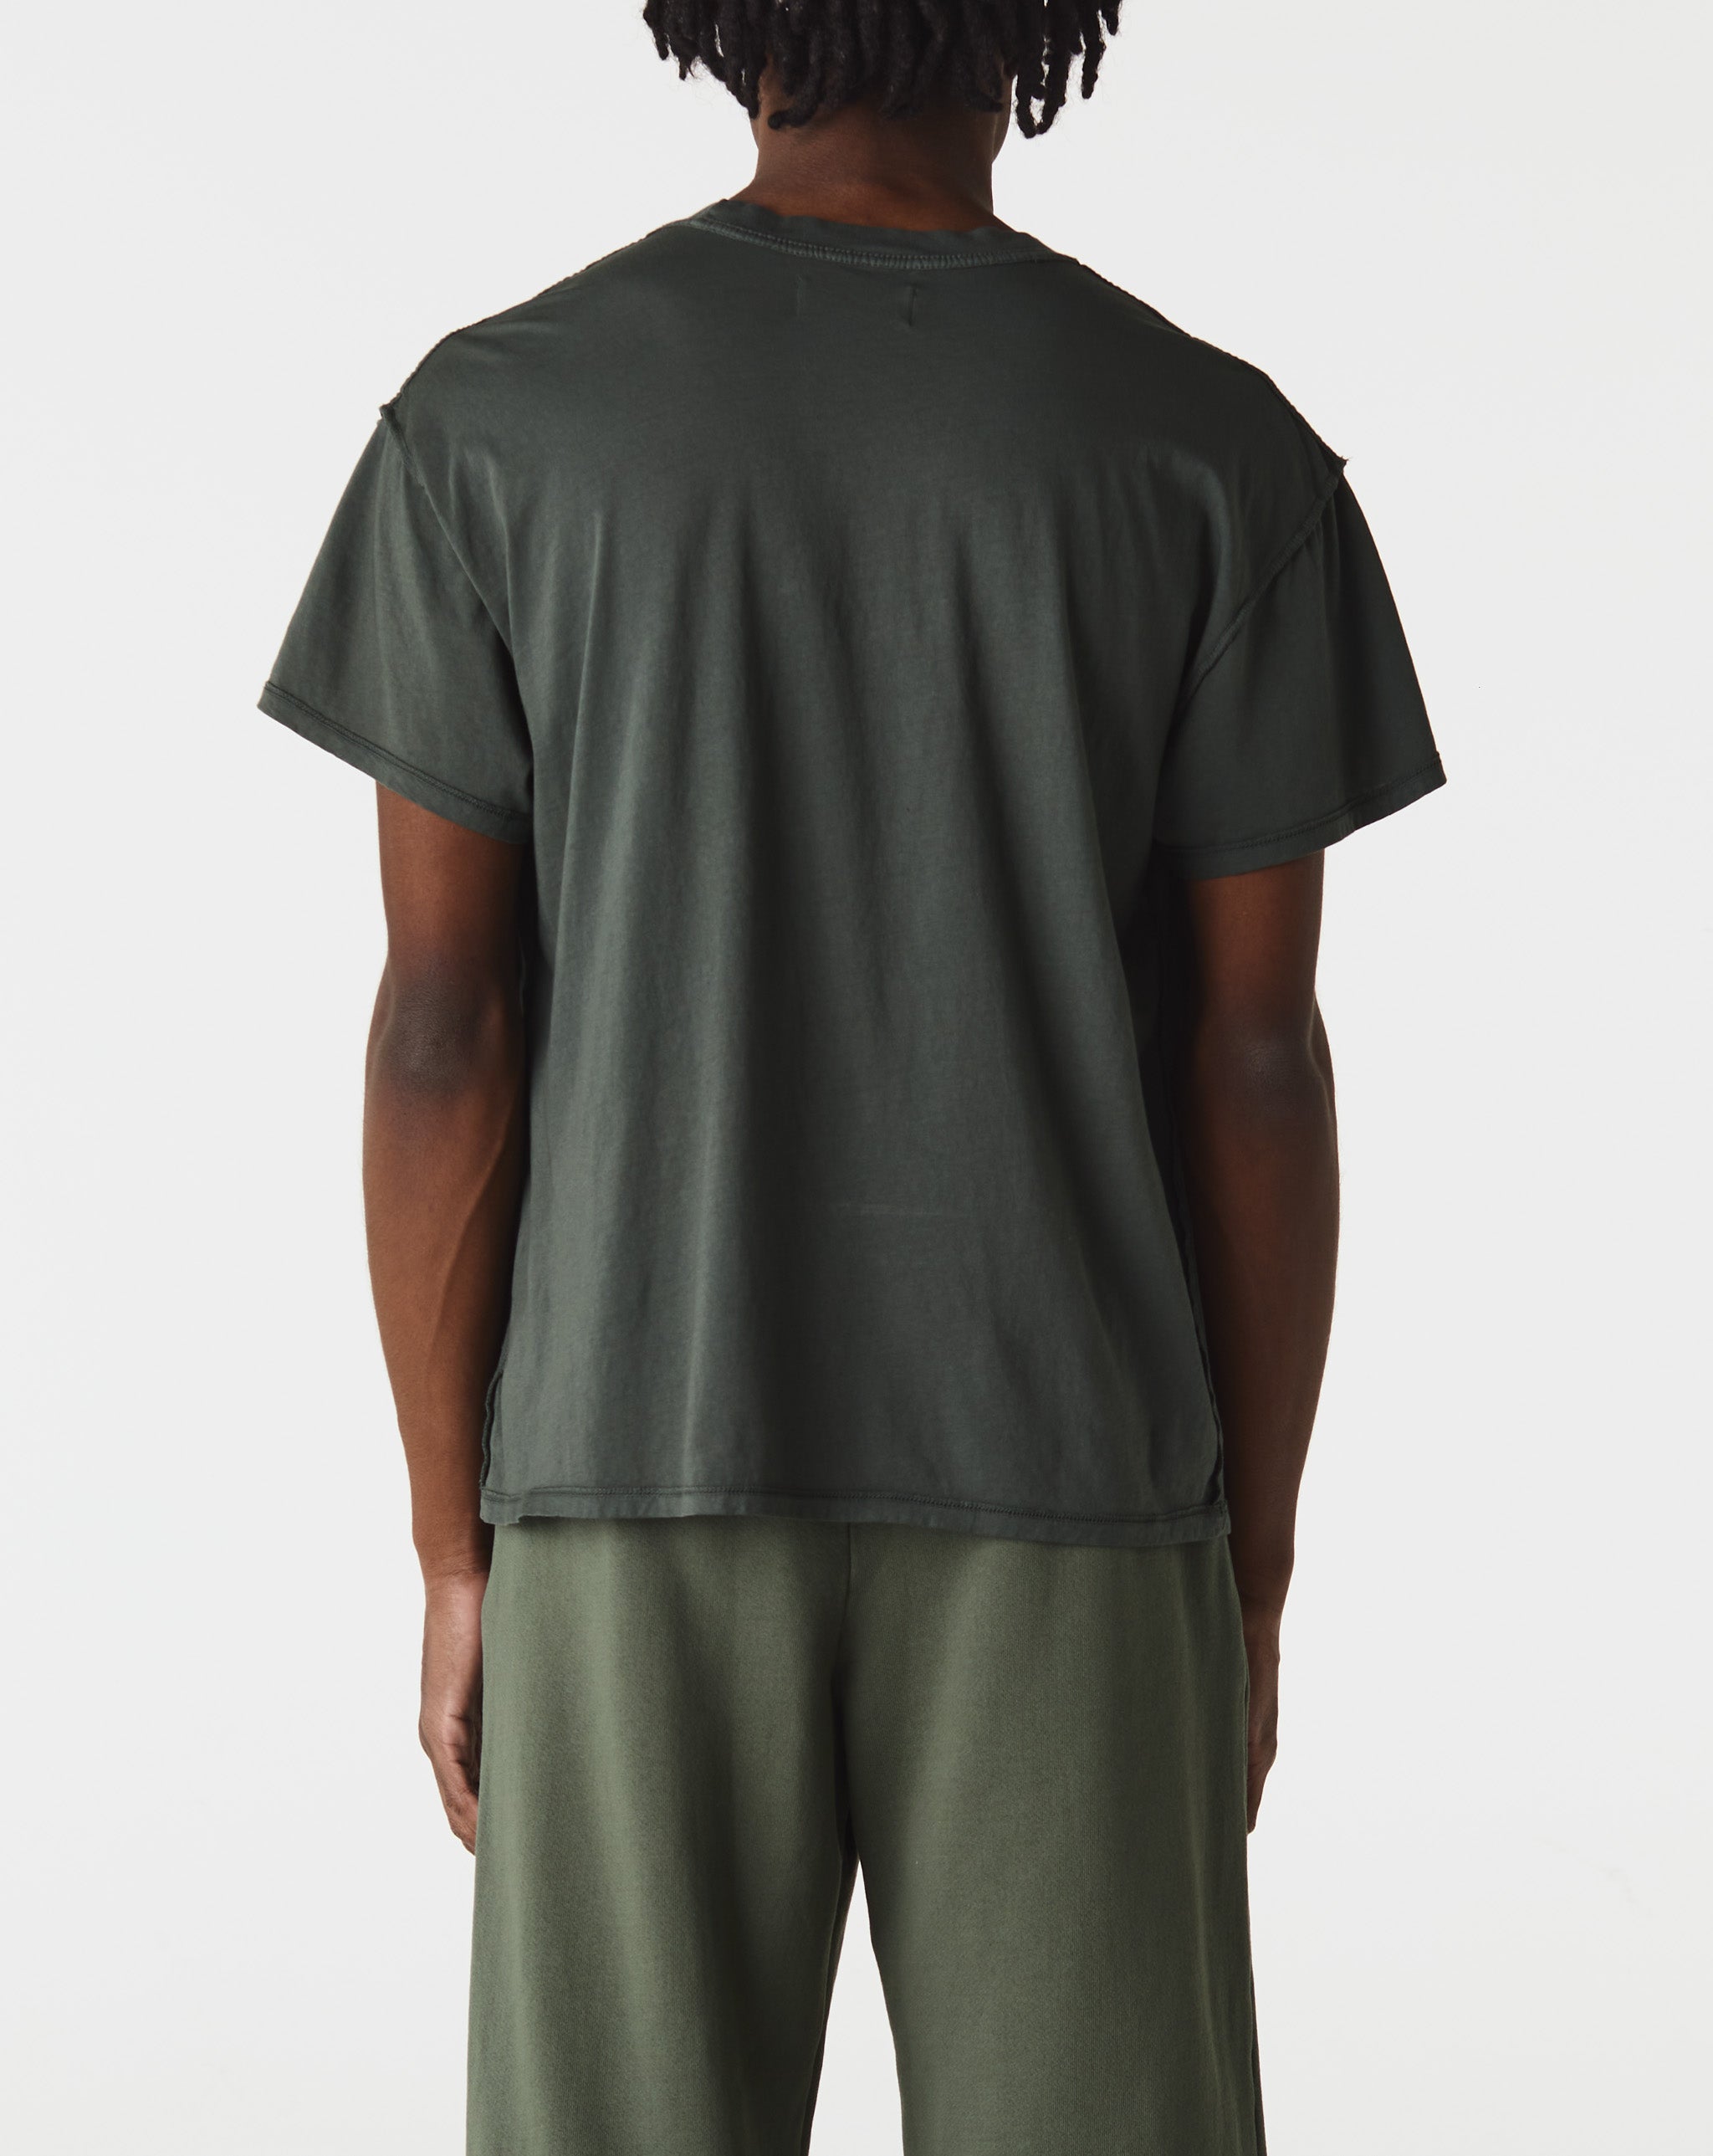 Les Tien Inside Out T-Shirt  - Cheap 127-0 Jordan outlet